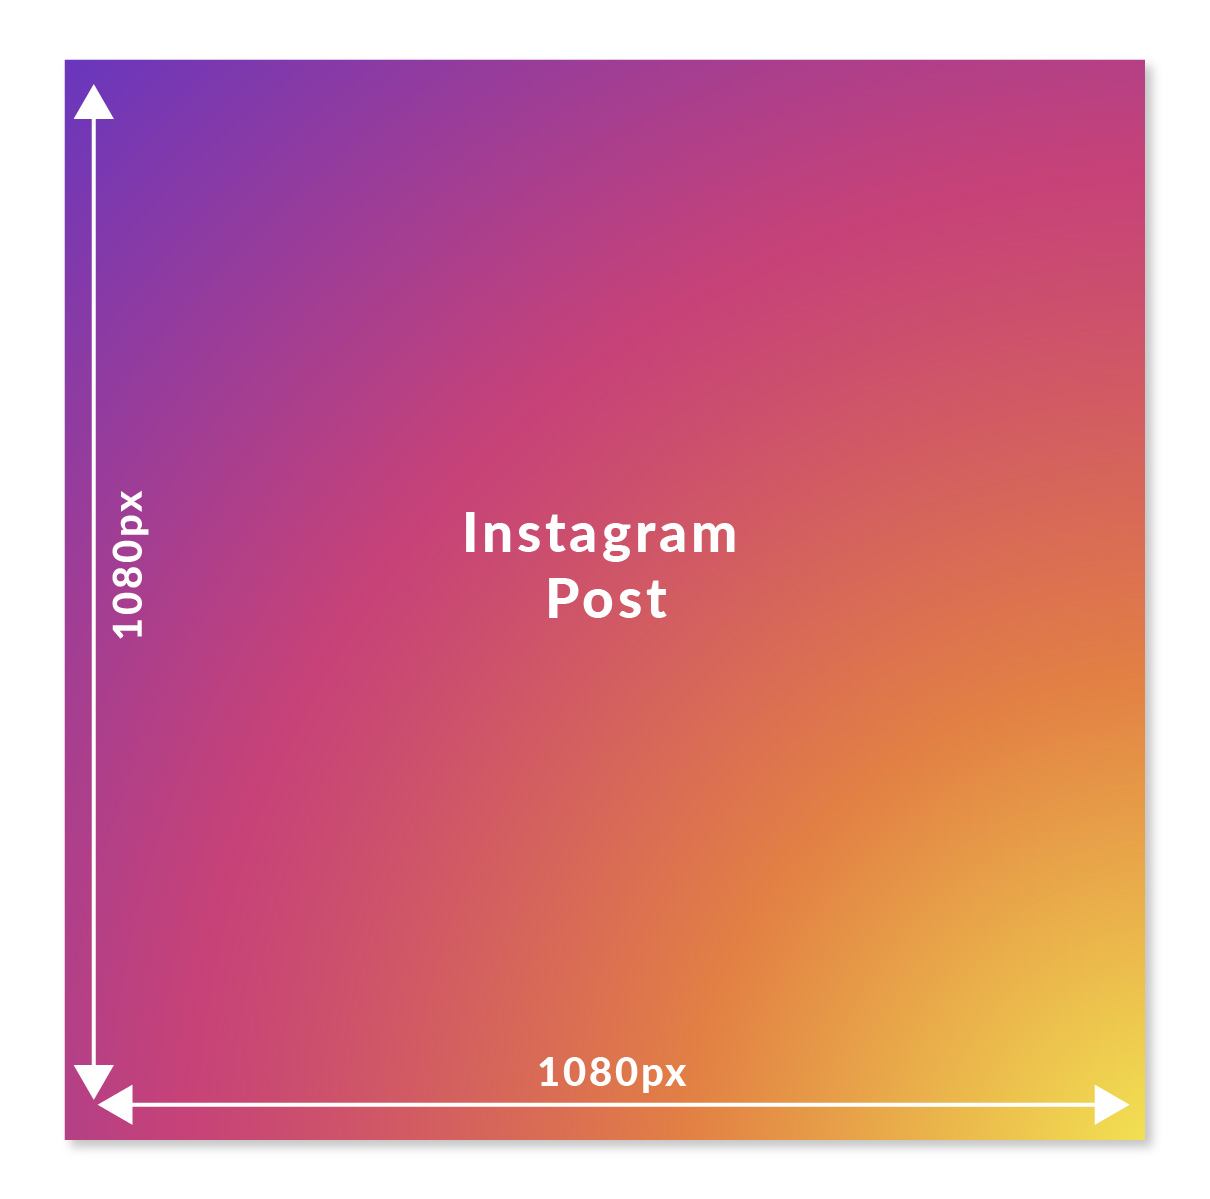 Instagram square photo dimensions 